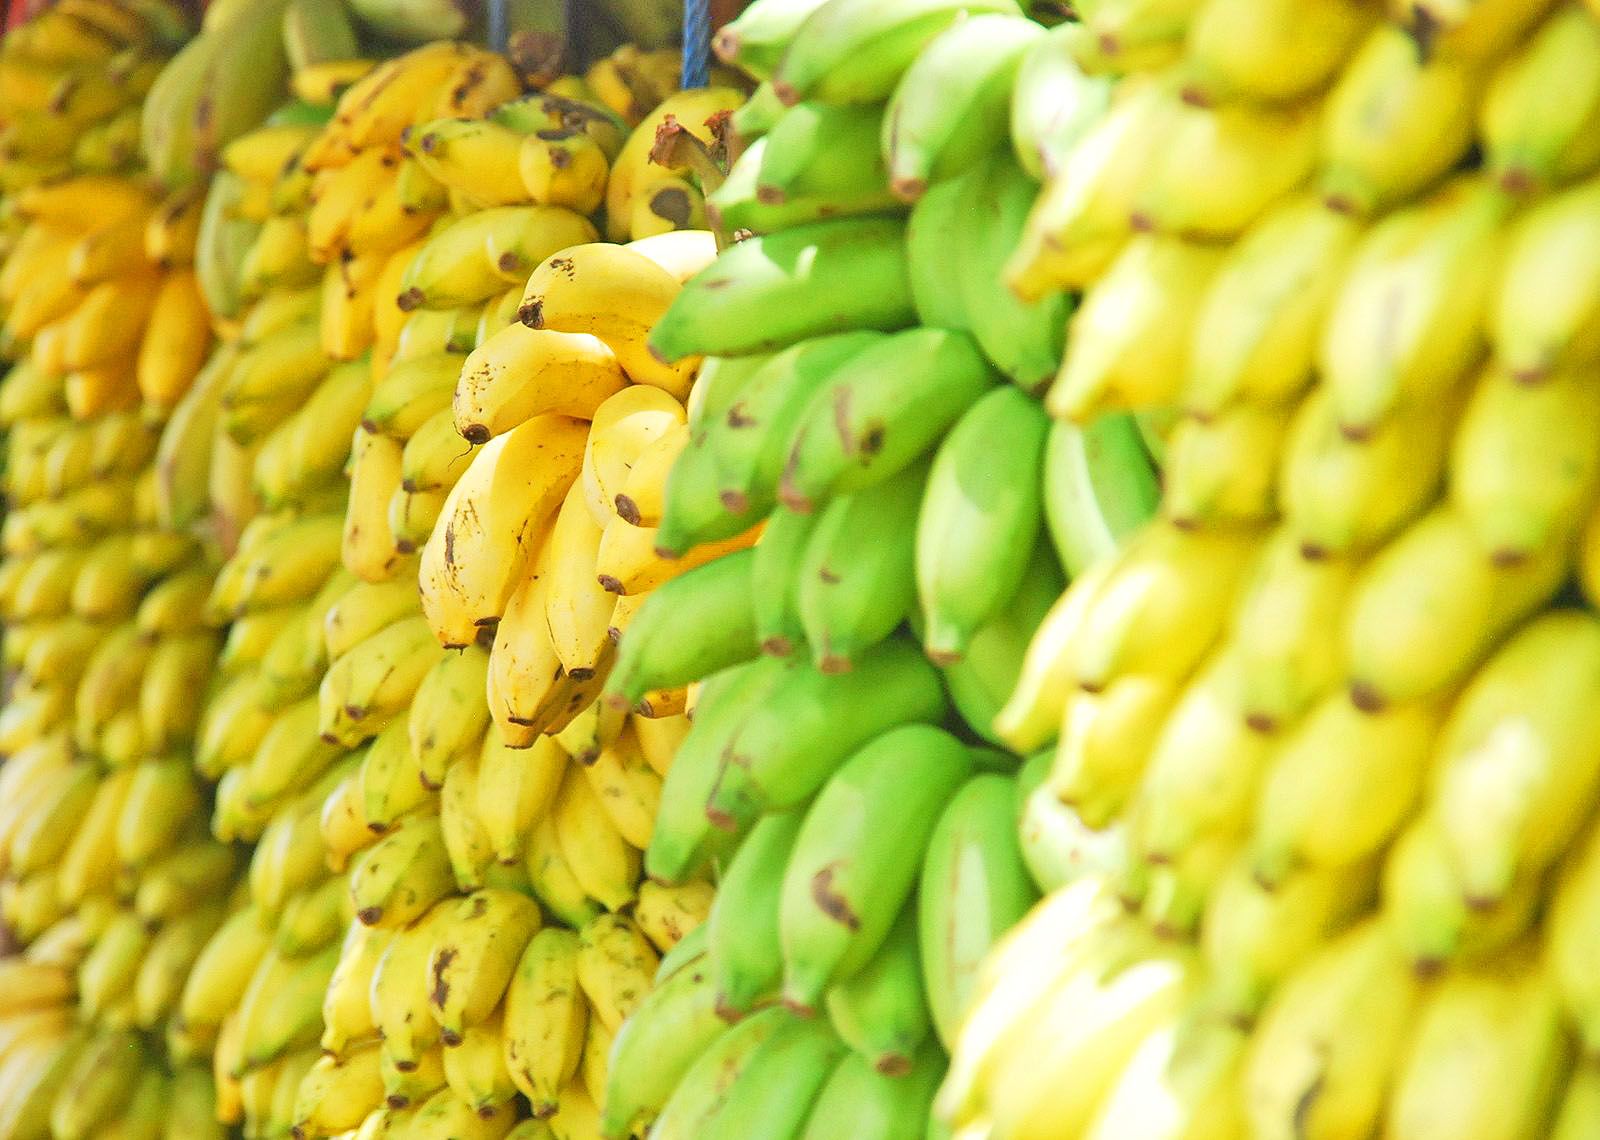 One Banana sees rising demand for organic bananas